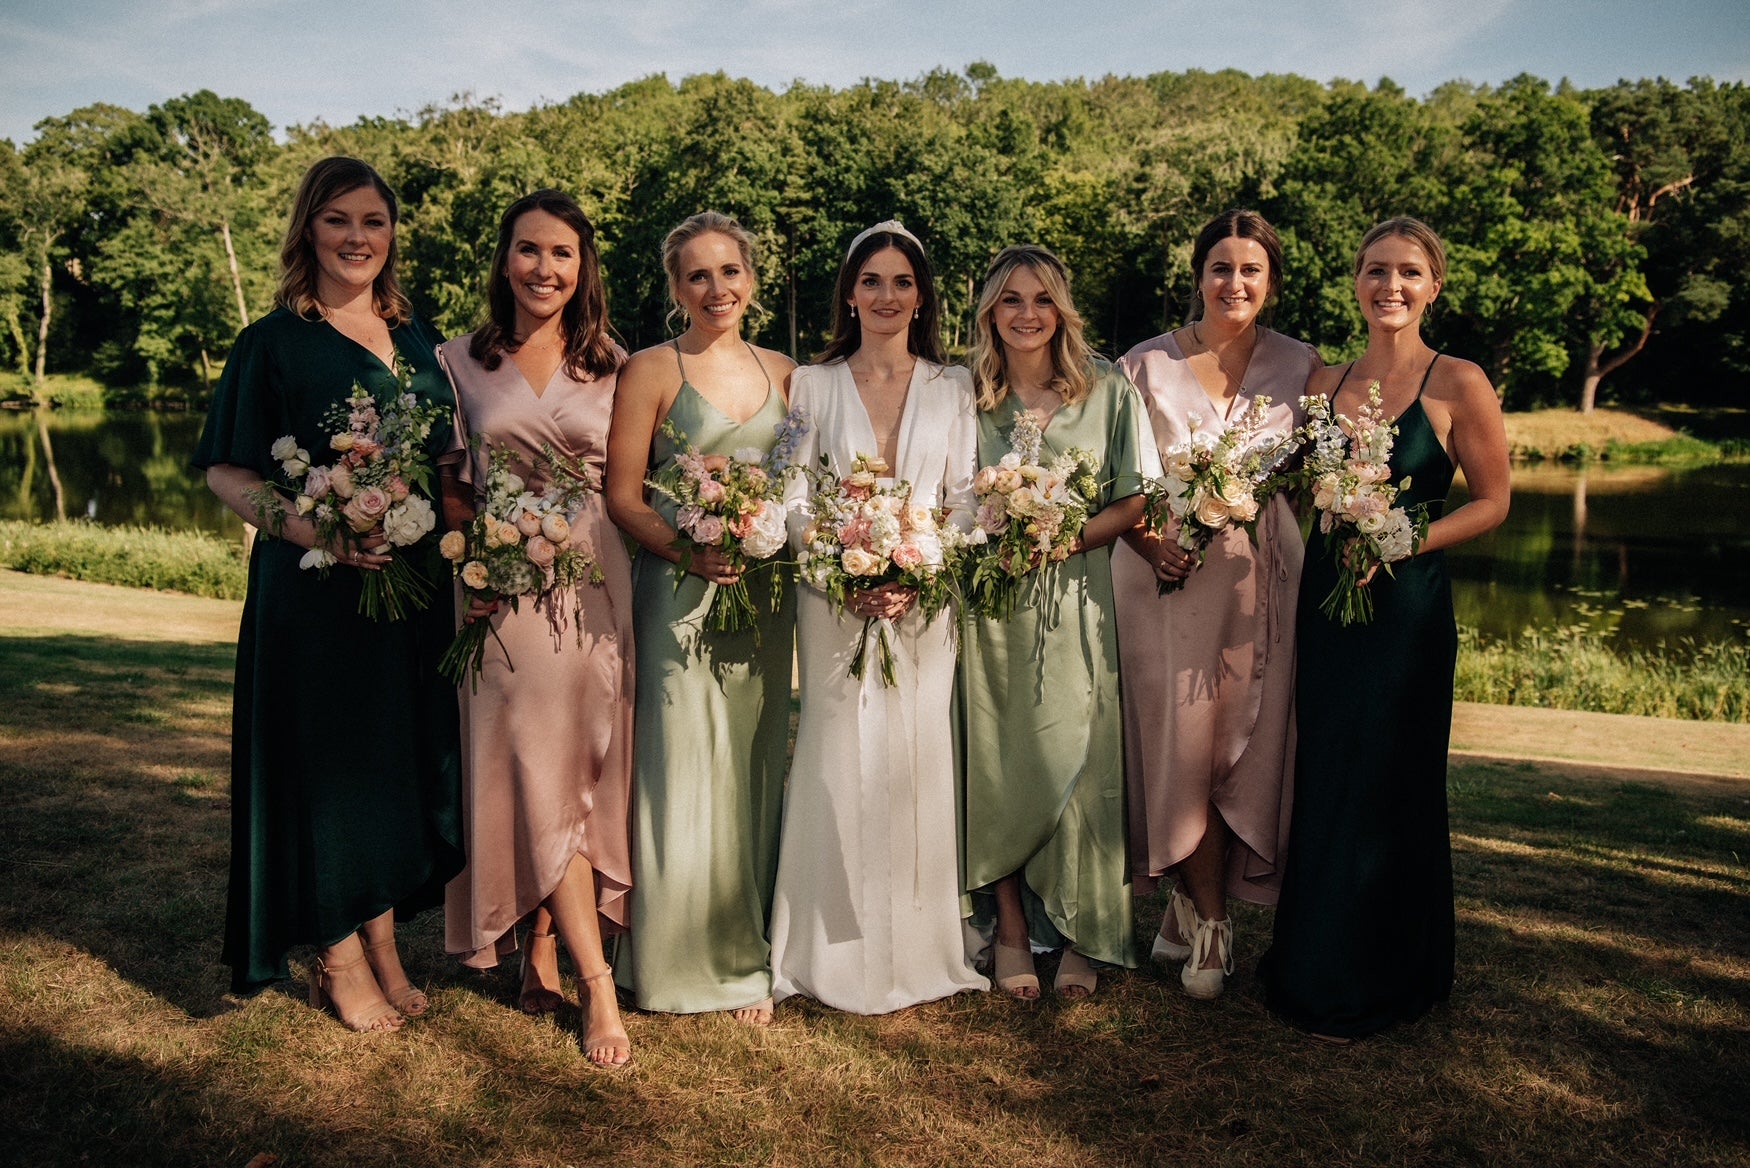 En brudfest med flickor som inkluderar en brud och 5 tärnor i rosa och gröna tärneklänningar